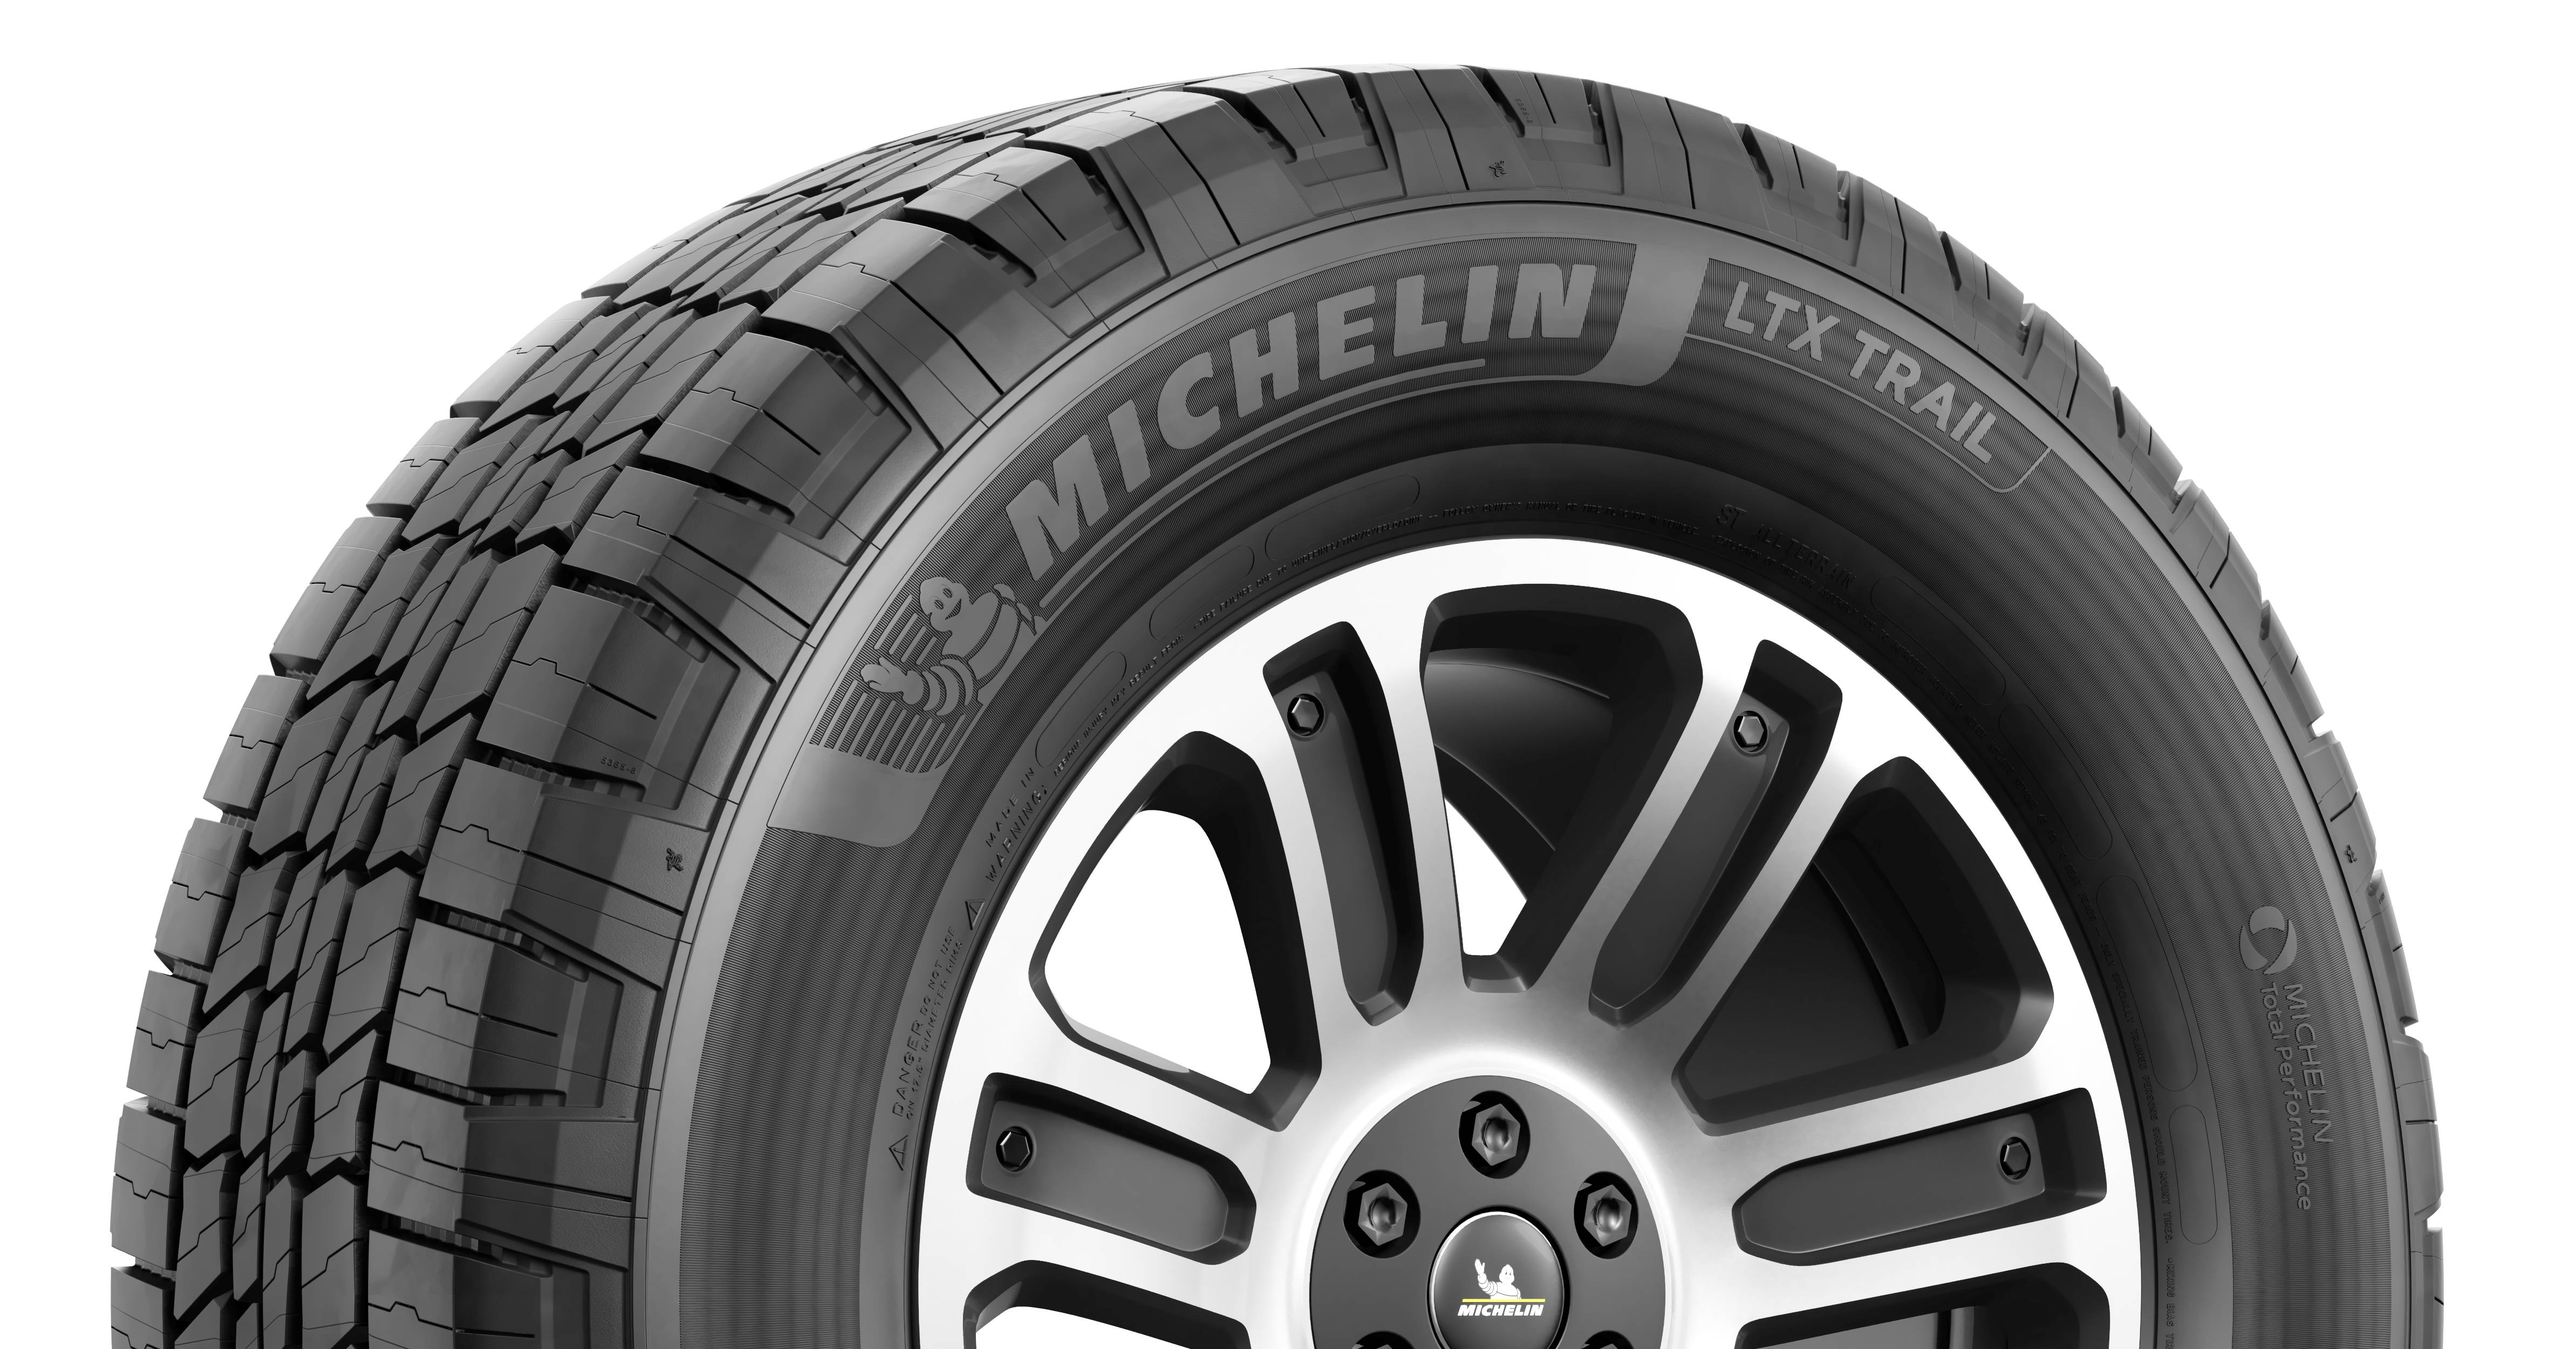 michelin-ltx-trail-2-jpg-paul-tan-s-automotive-news